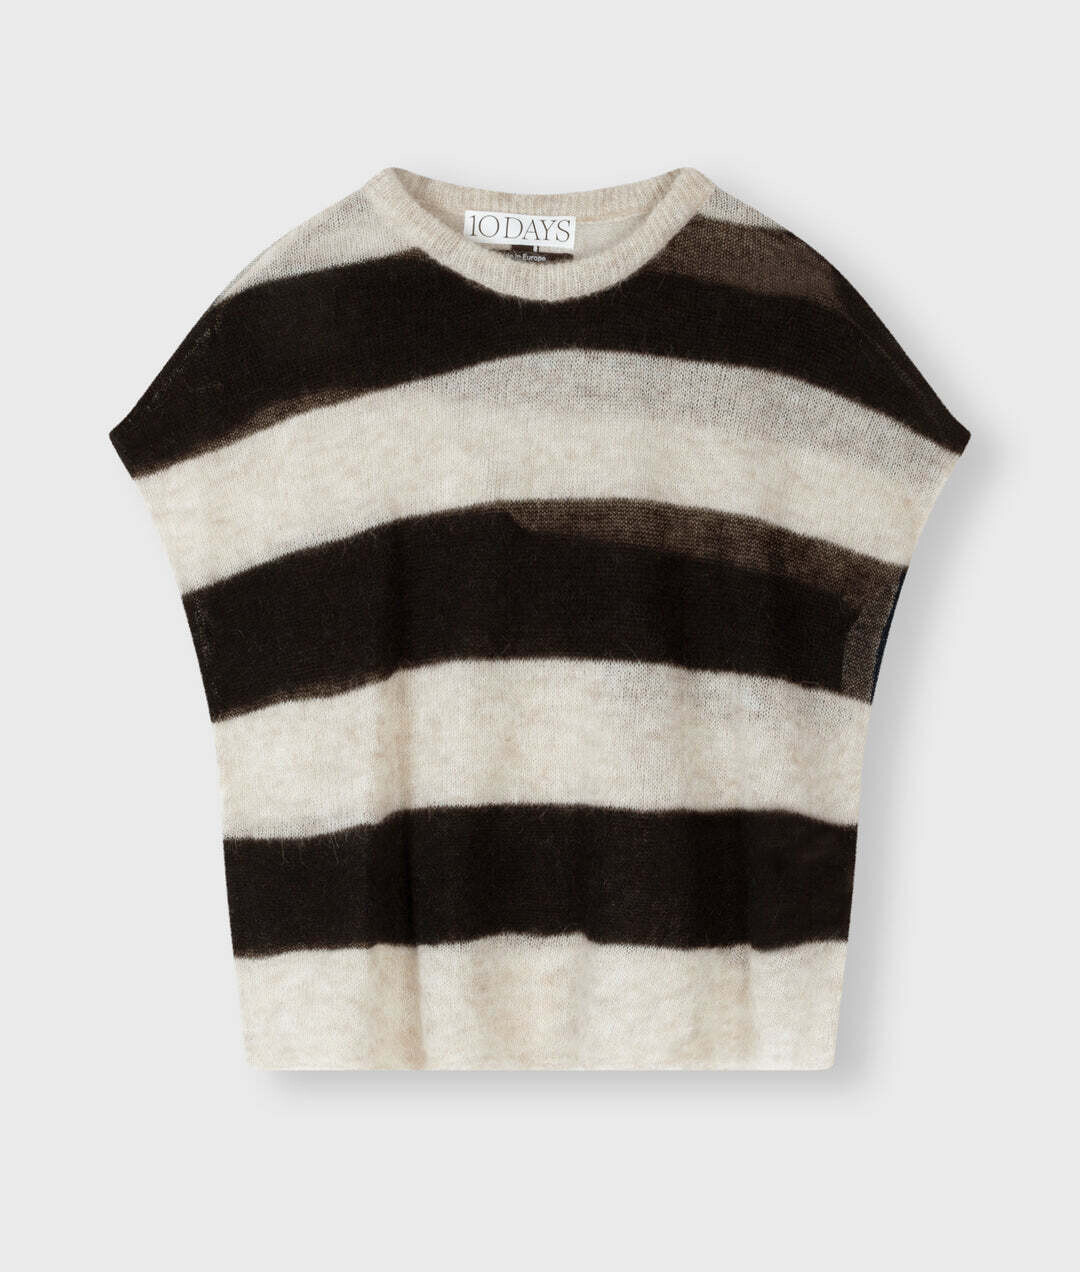 10 Days tee thin knit stripes Safari/bla, Größe: XS